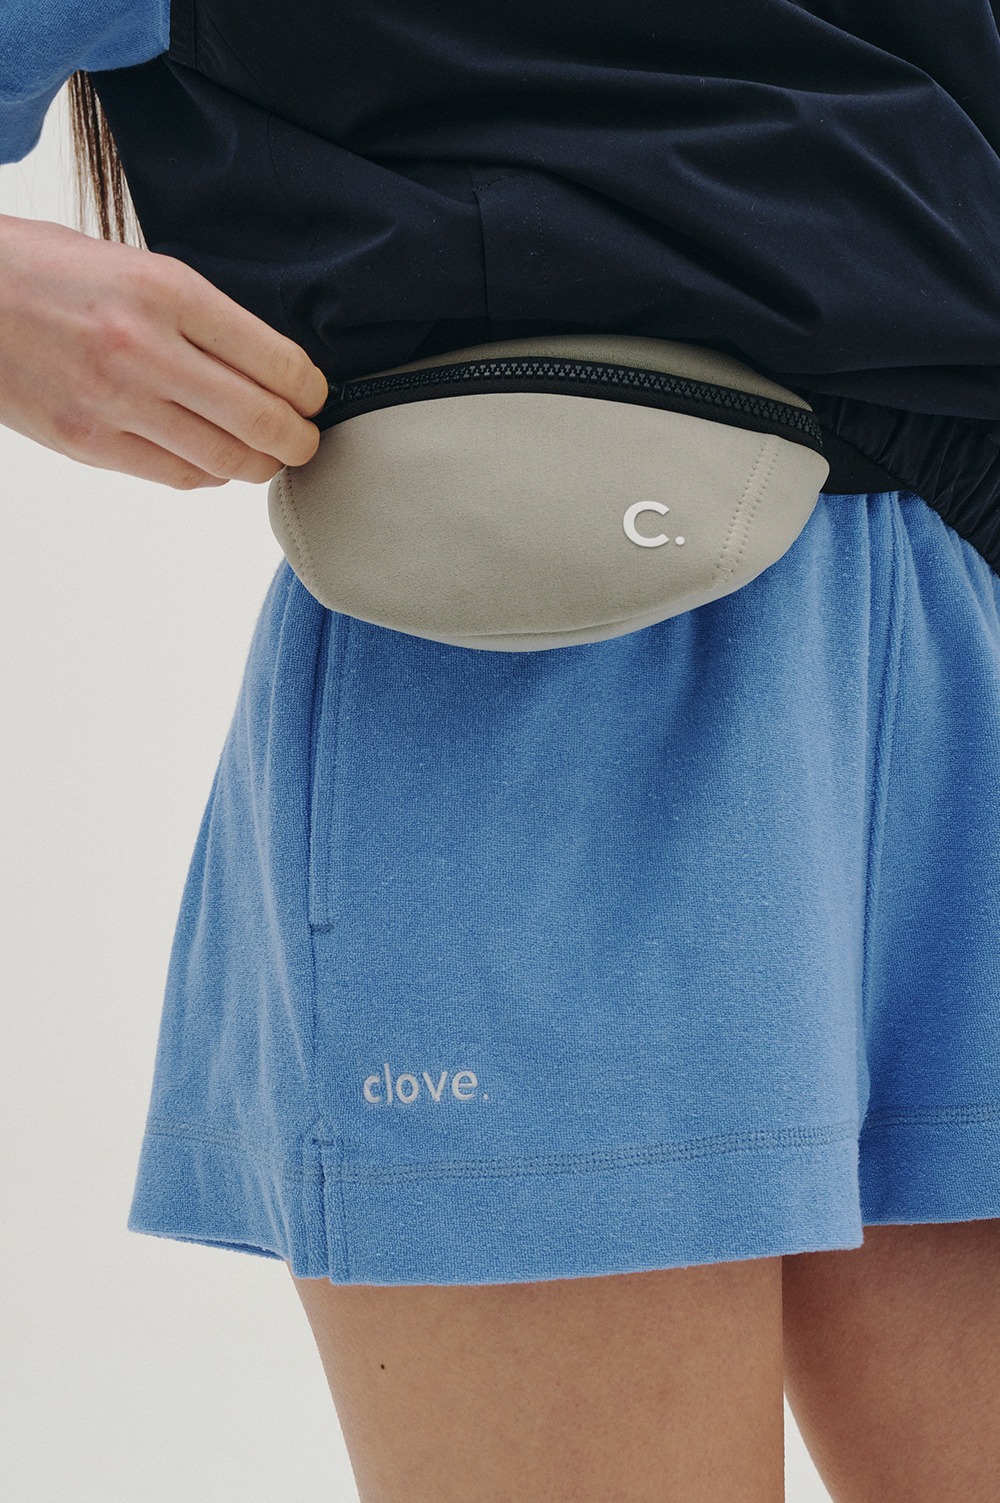 clove - Belt Bag (Grey)